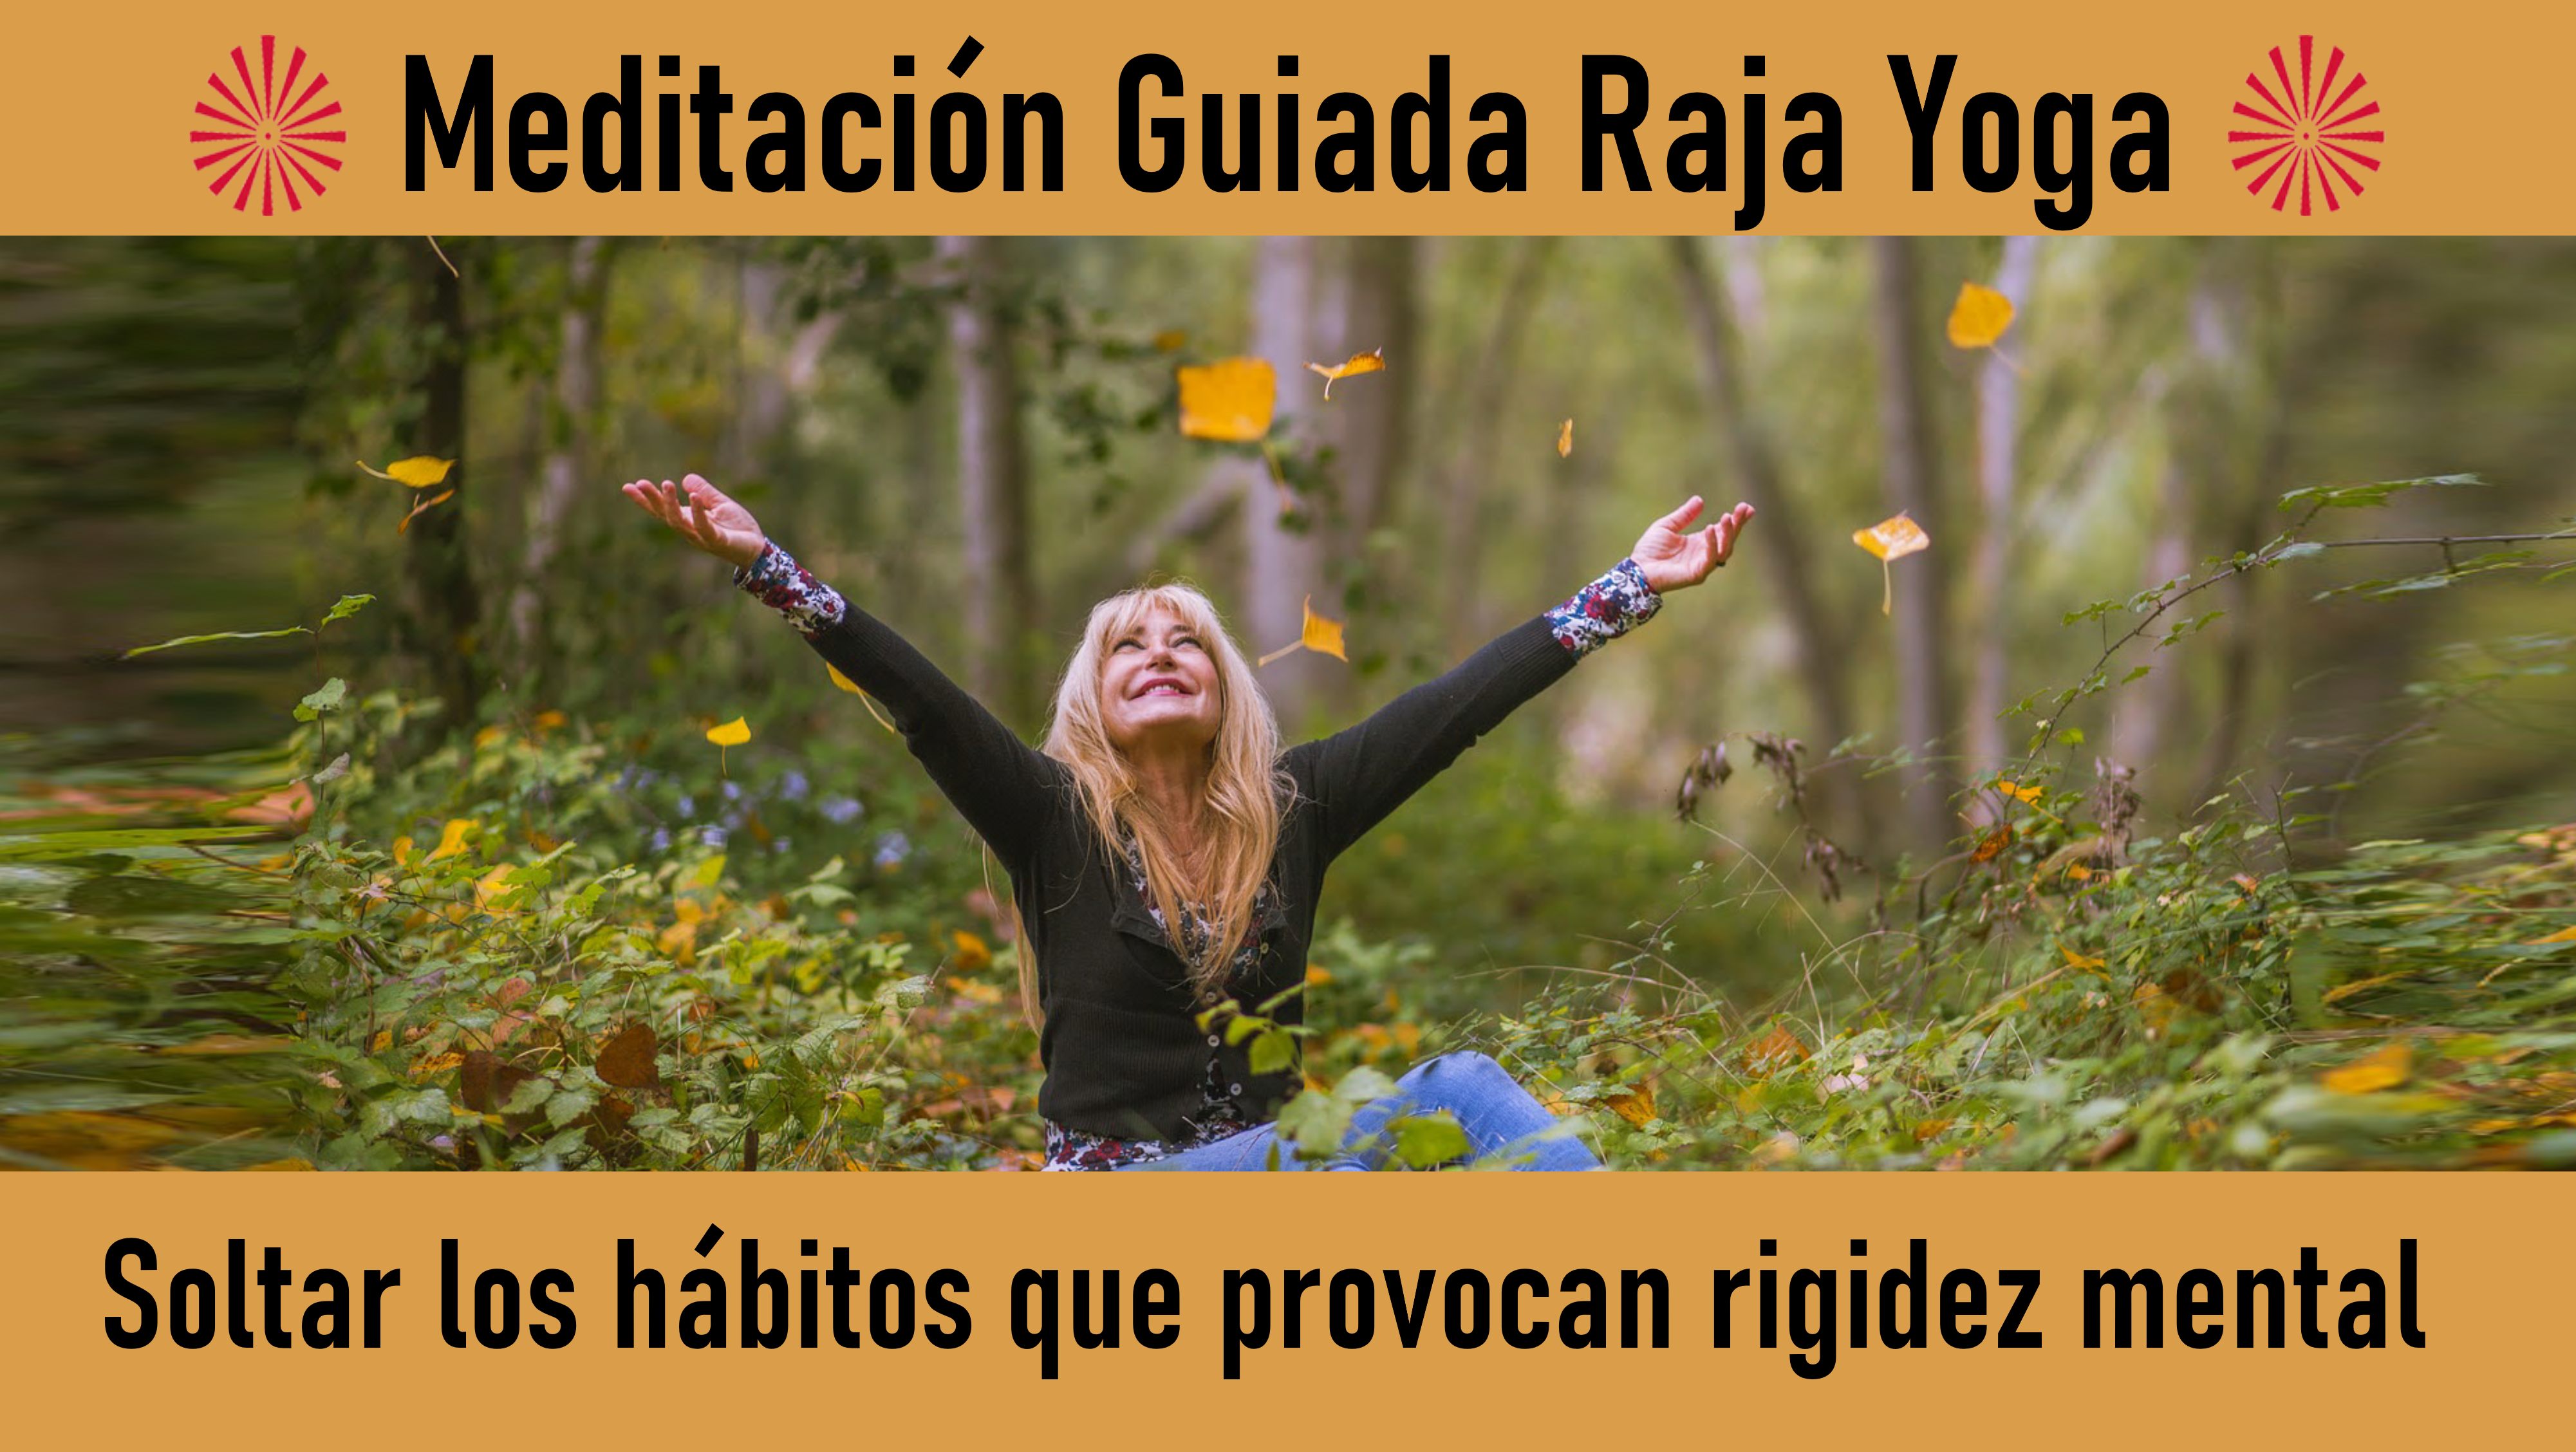 Meditación Raja Yoga: Soltar los hábitos que provocan rigidez mental (10 Julio 2020) On-line desde Sevilla